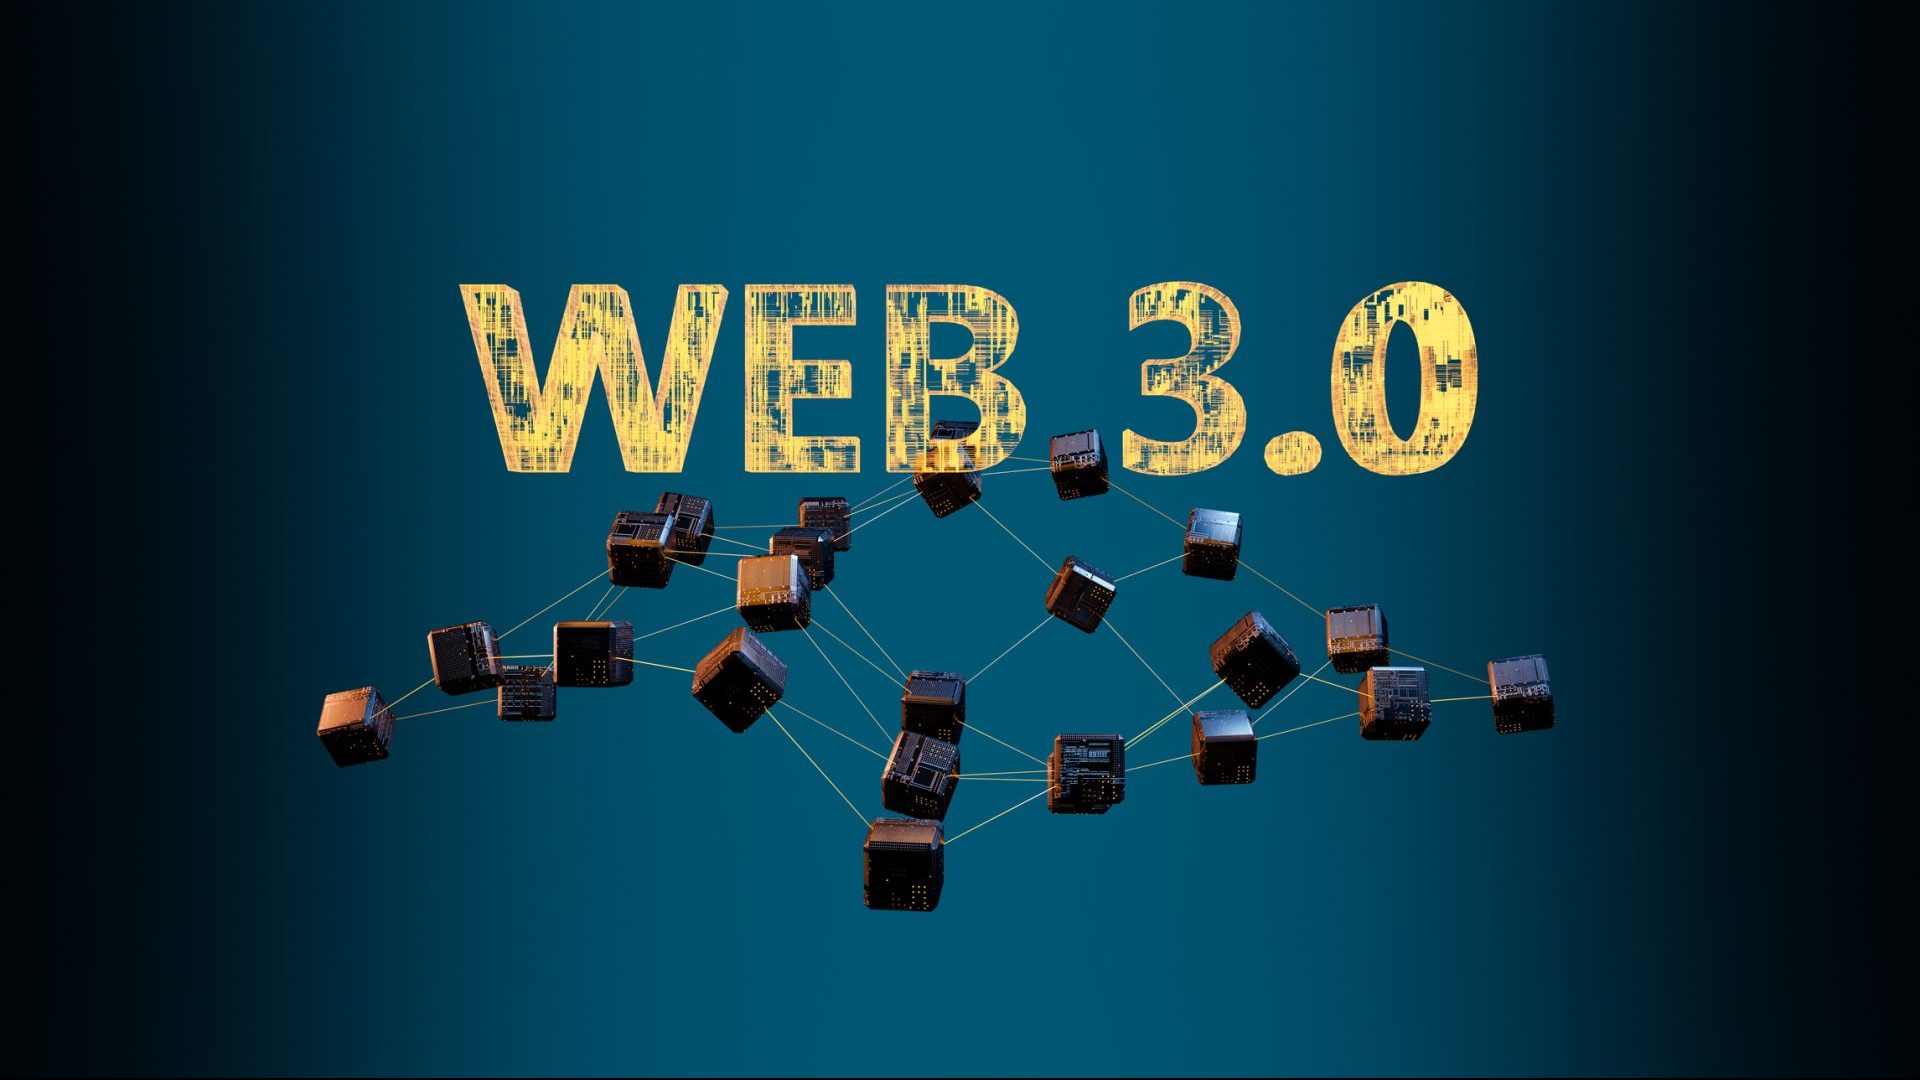 图片展示了“WEB 3.0”字样，背景是深蓝色，字样下方有多个相互连接的立方体，象征网络节点和分布式技术。